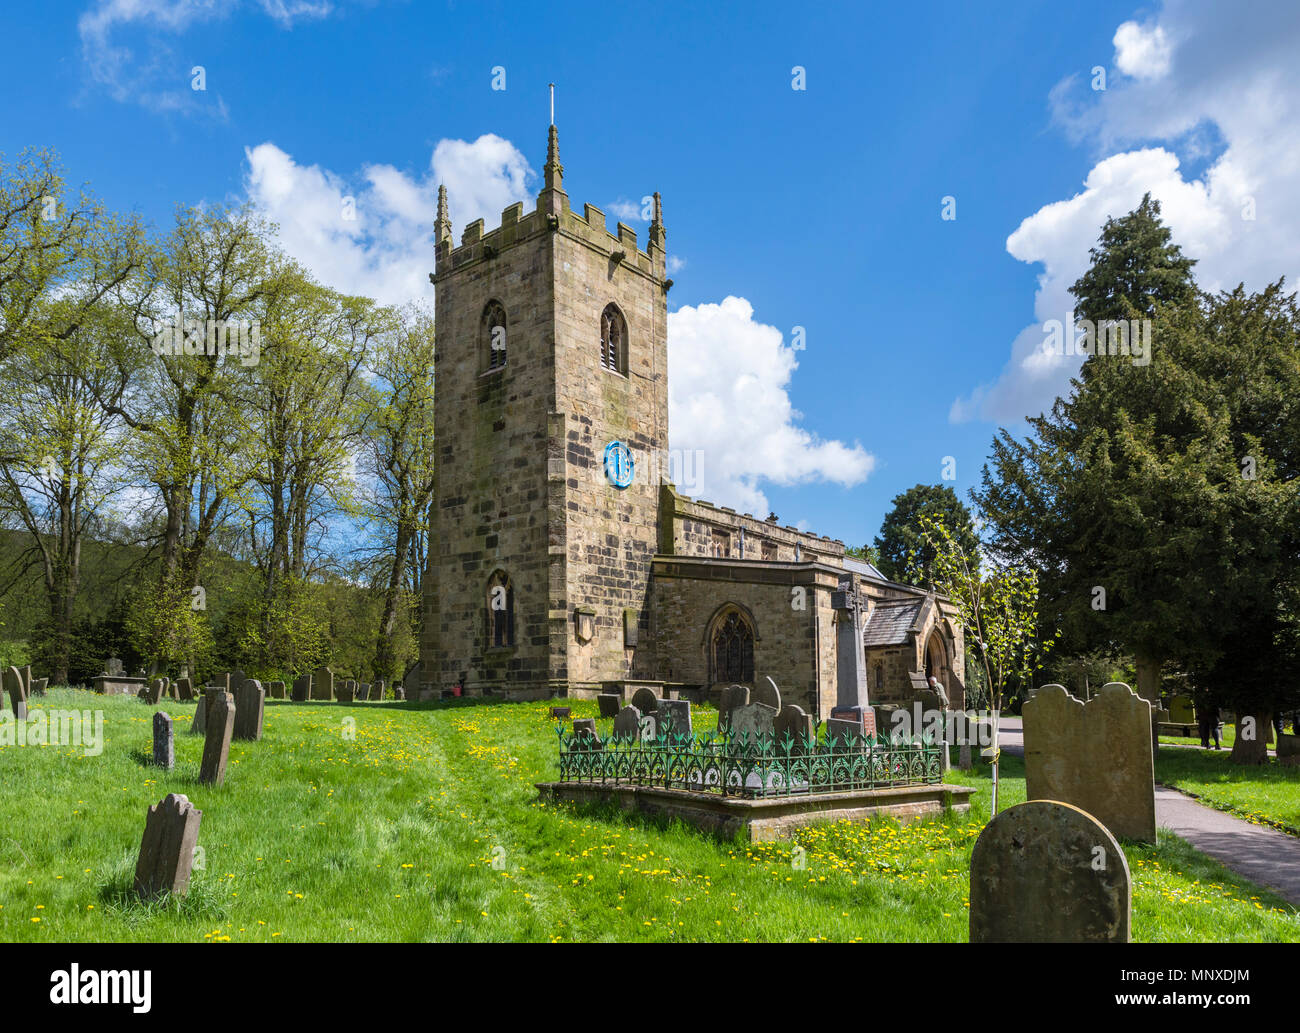 La Chiesa Parrocchiale in Eyam, Peak District, Derbyshire, Inghilterra, Regno Unito. Eyam è talvolta indicata come la peste Village. Foto Stock